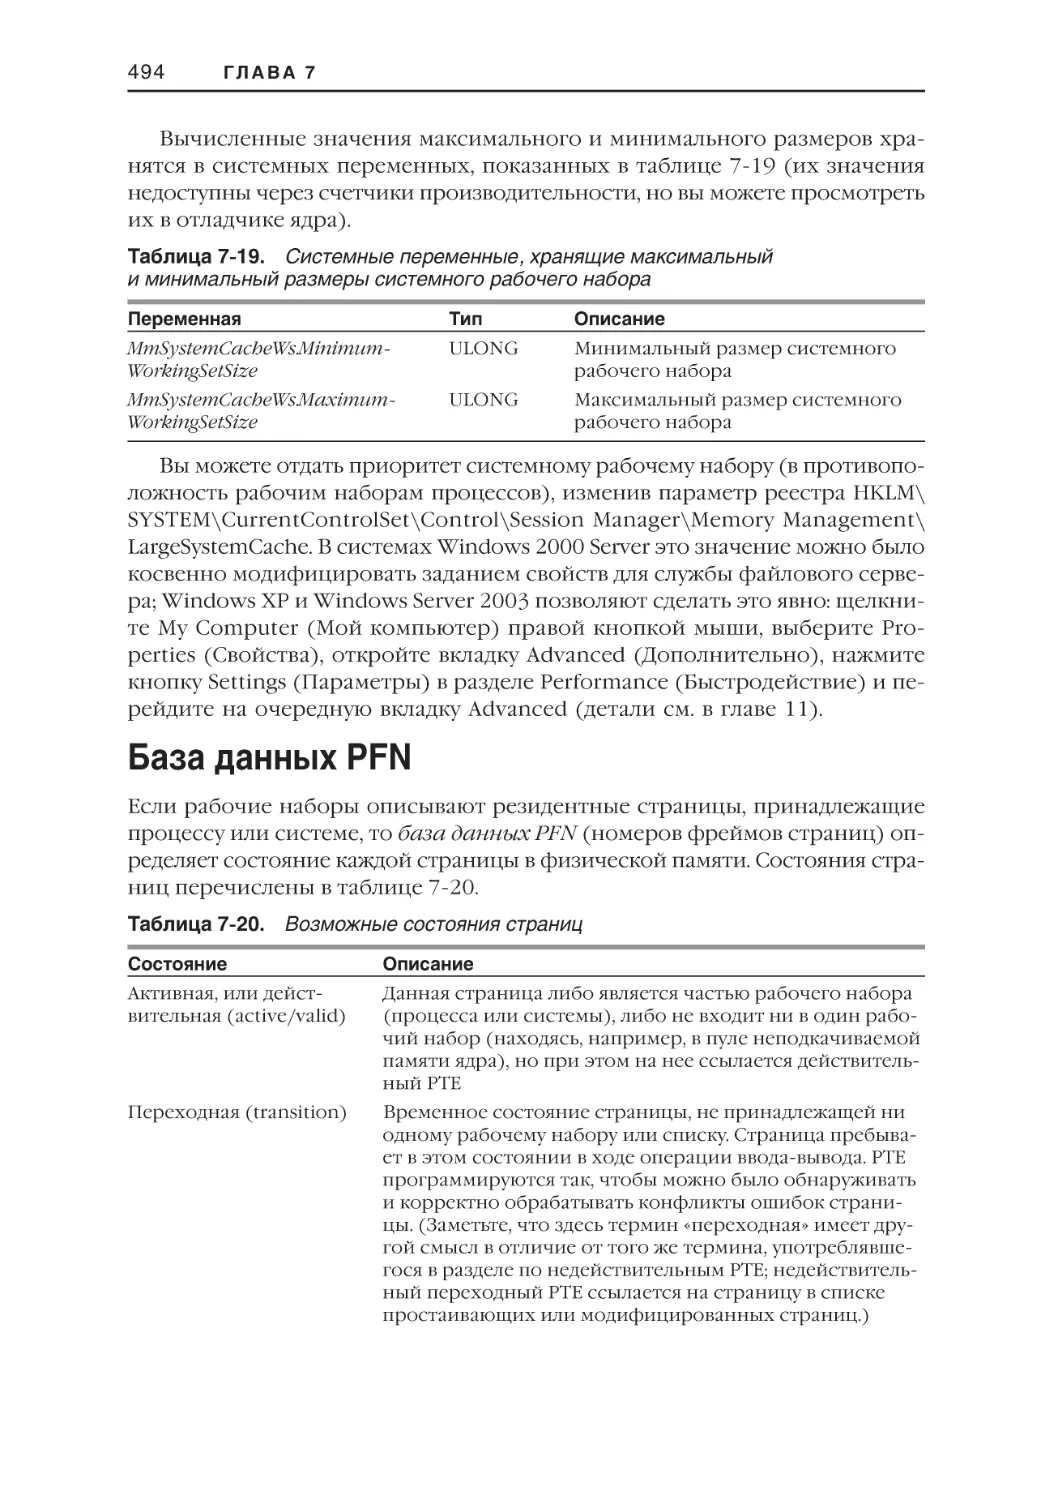 База данных PFN